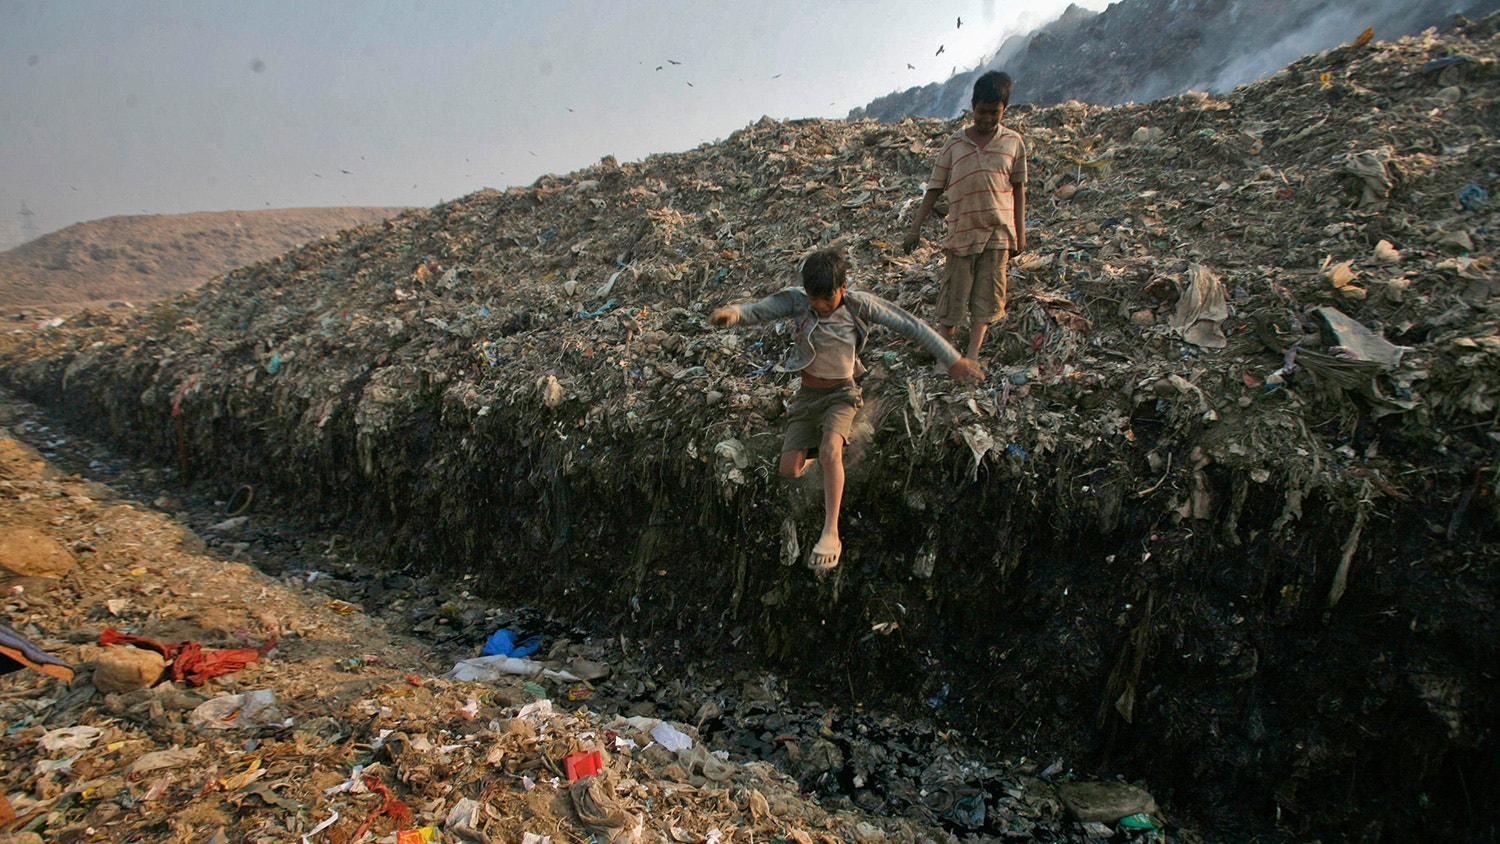  Dinesh Mukherjee de 11 anos, cujo trabalho &eacute; recolher lixo,  observa o seu amigo a saltar para uma po&ccedil;a de lixo t&oacute;xico no aterro de Ghazipur, em Nova Deli. 10 de novembro de 2011. | Parivartan Sharma - Reuters 